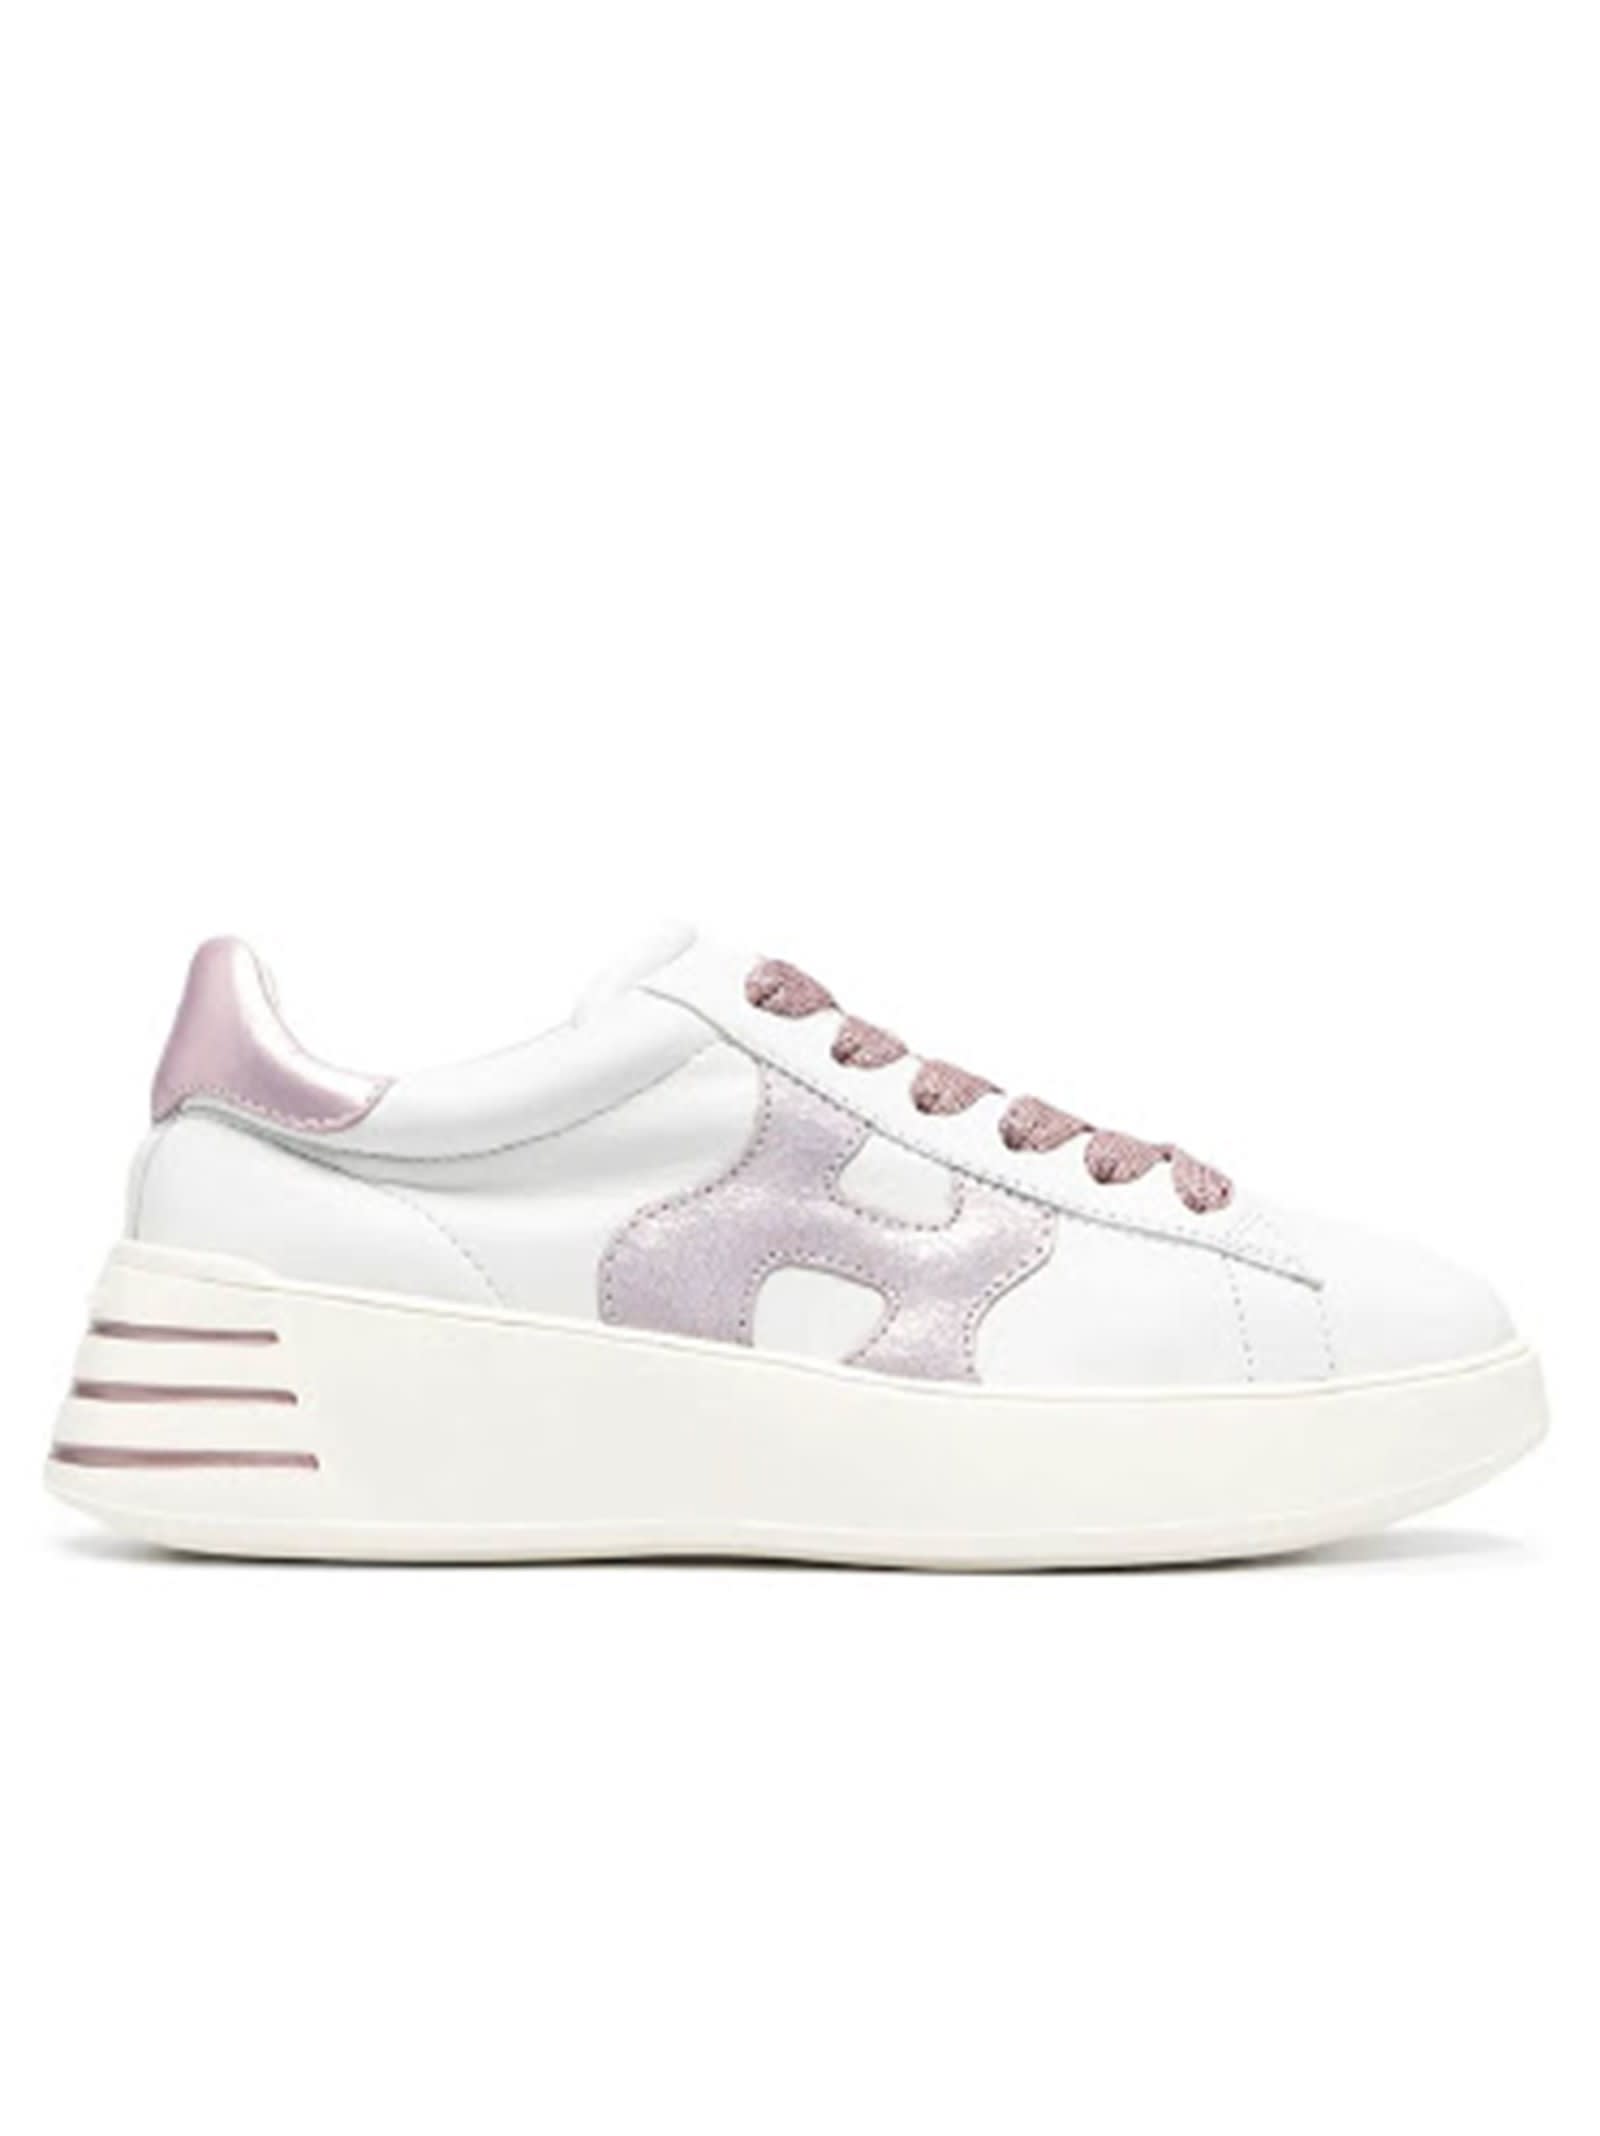 Hogan White And Metallic Pink Rebel Sneakers